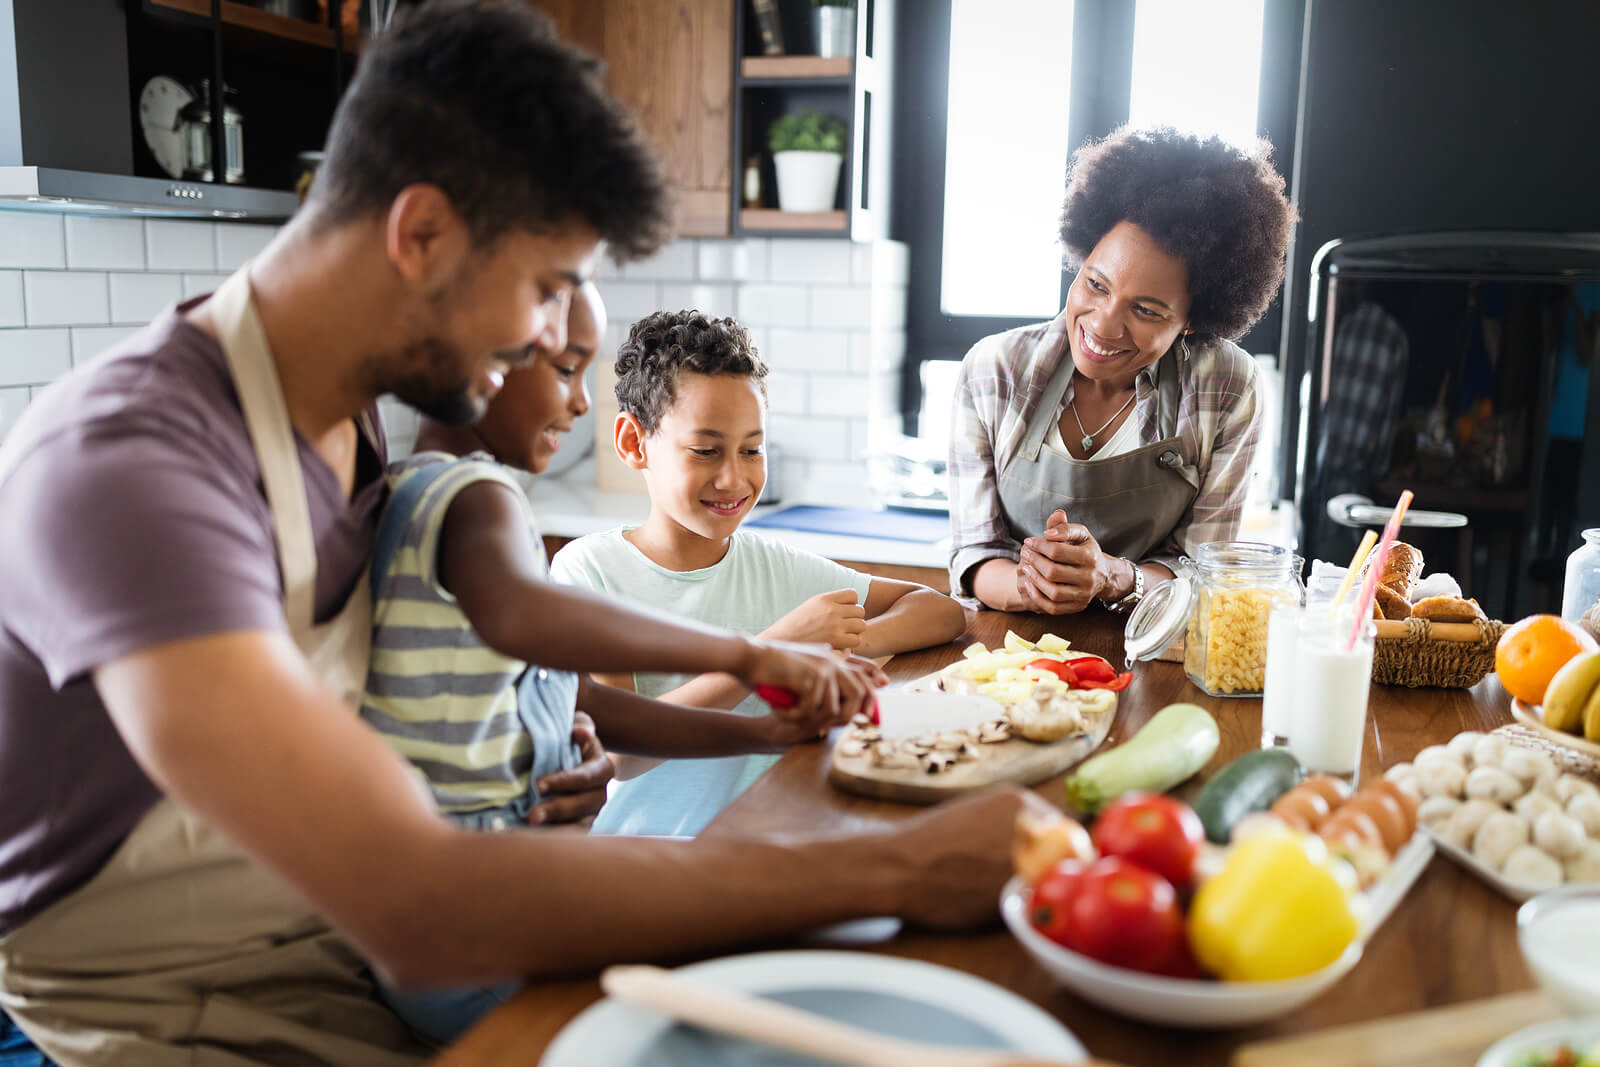 Cómo planificar un menú saludable en familia